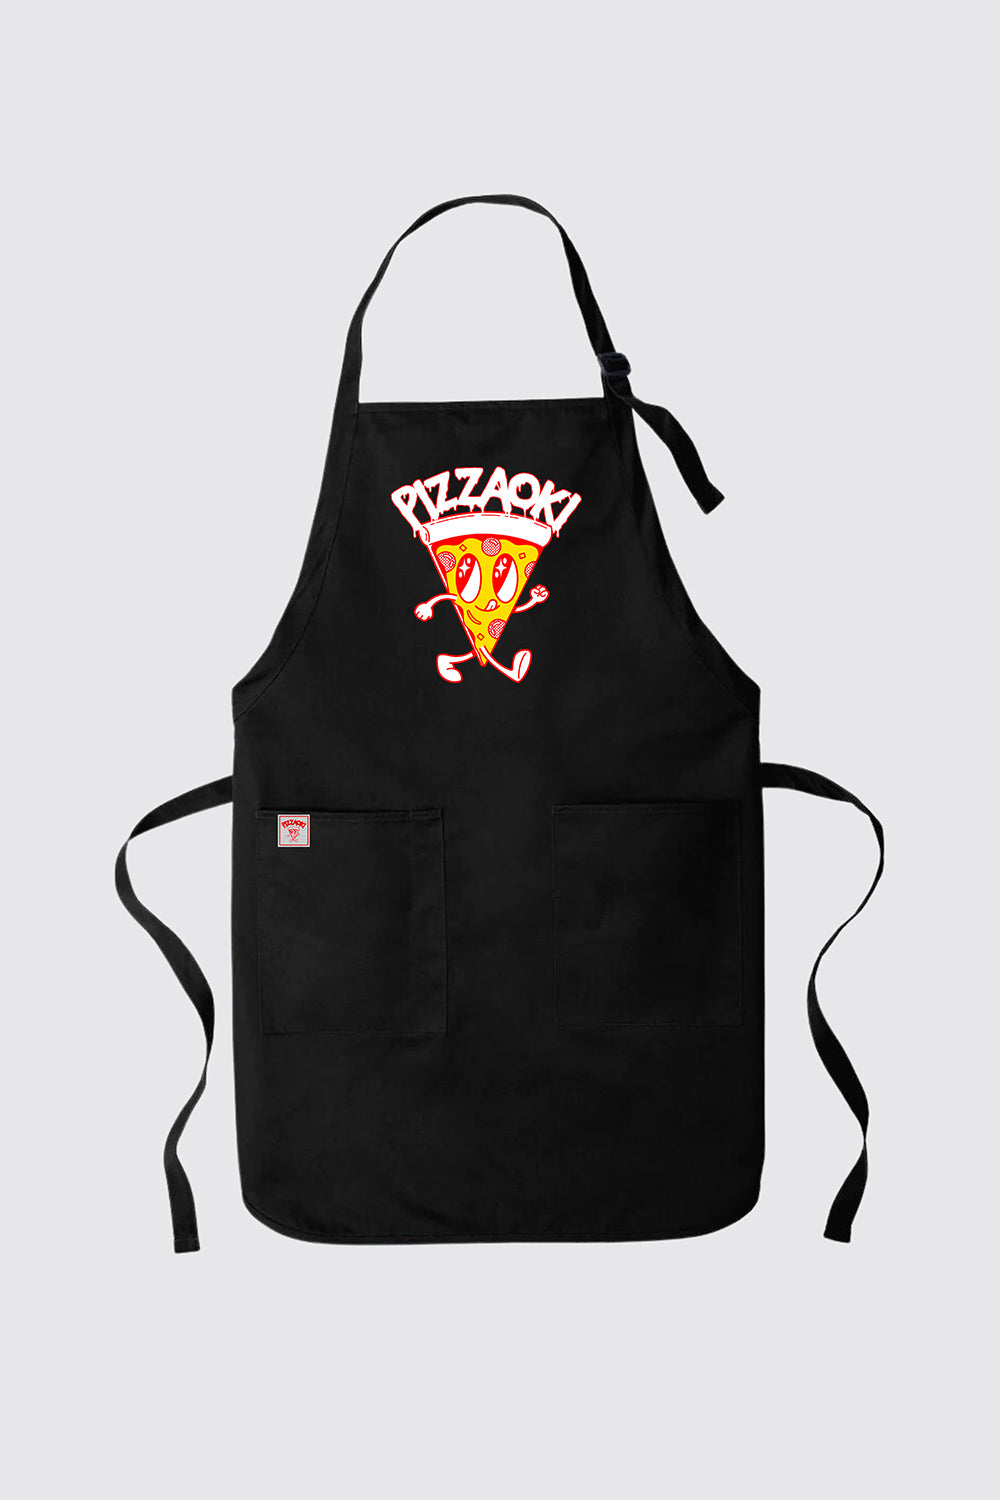 Pizzaoki Apron - Black